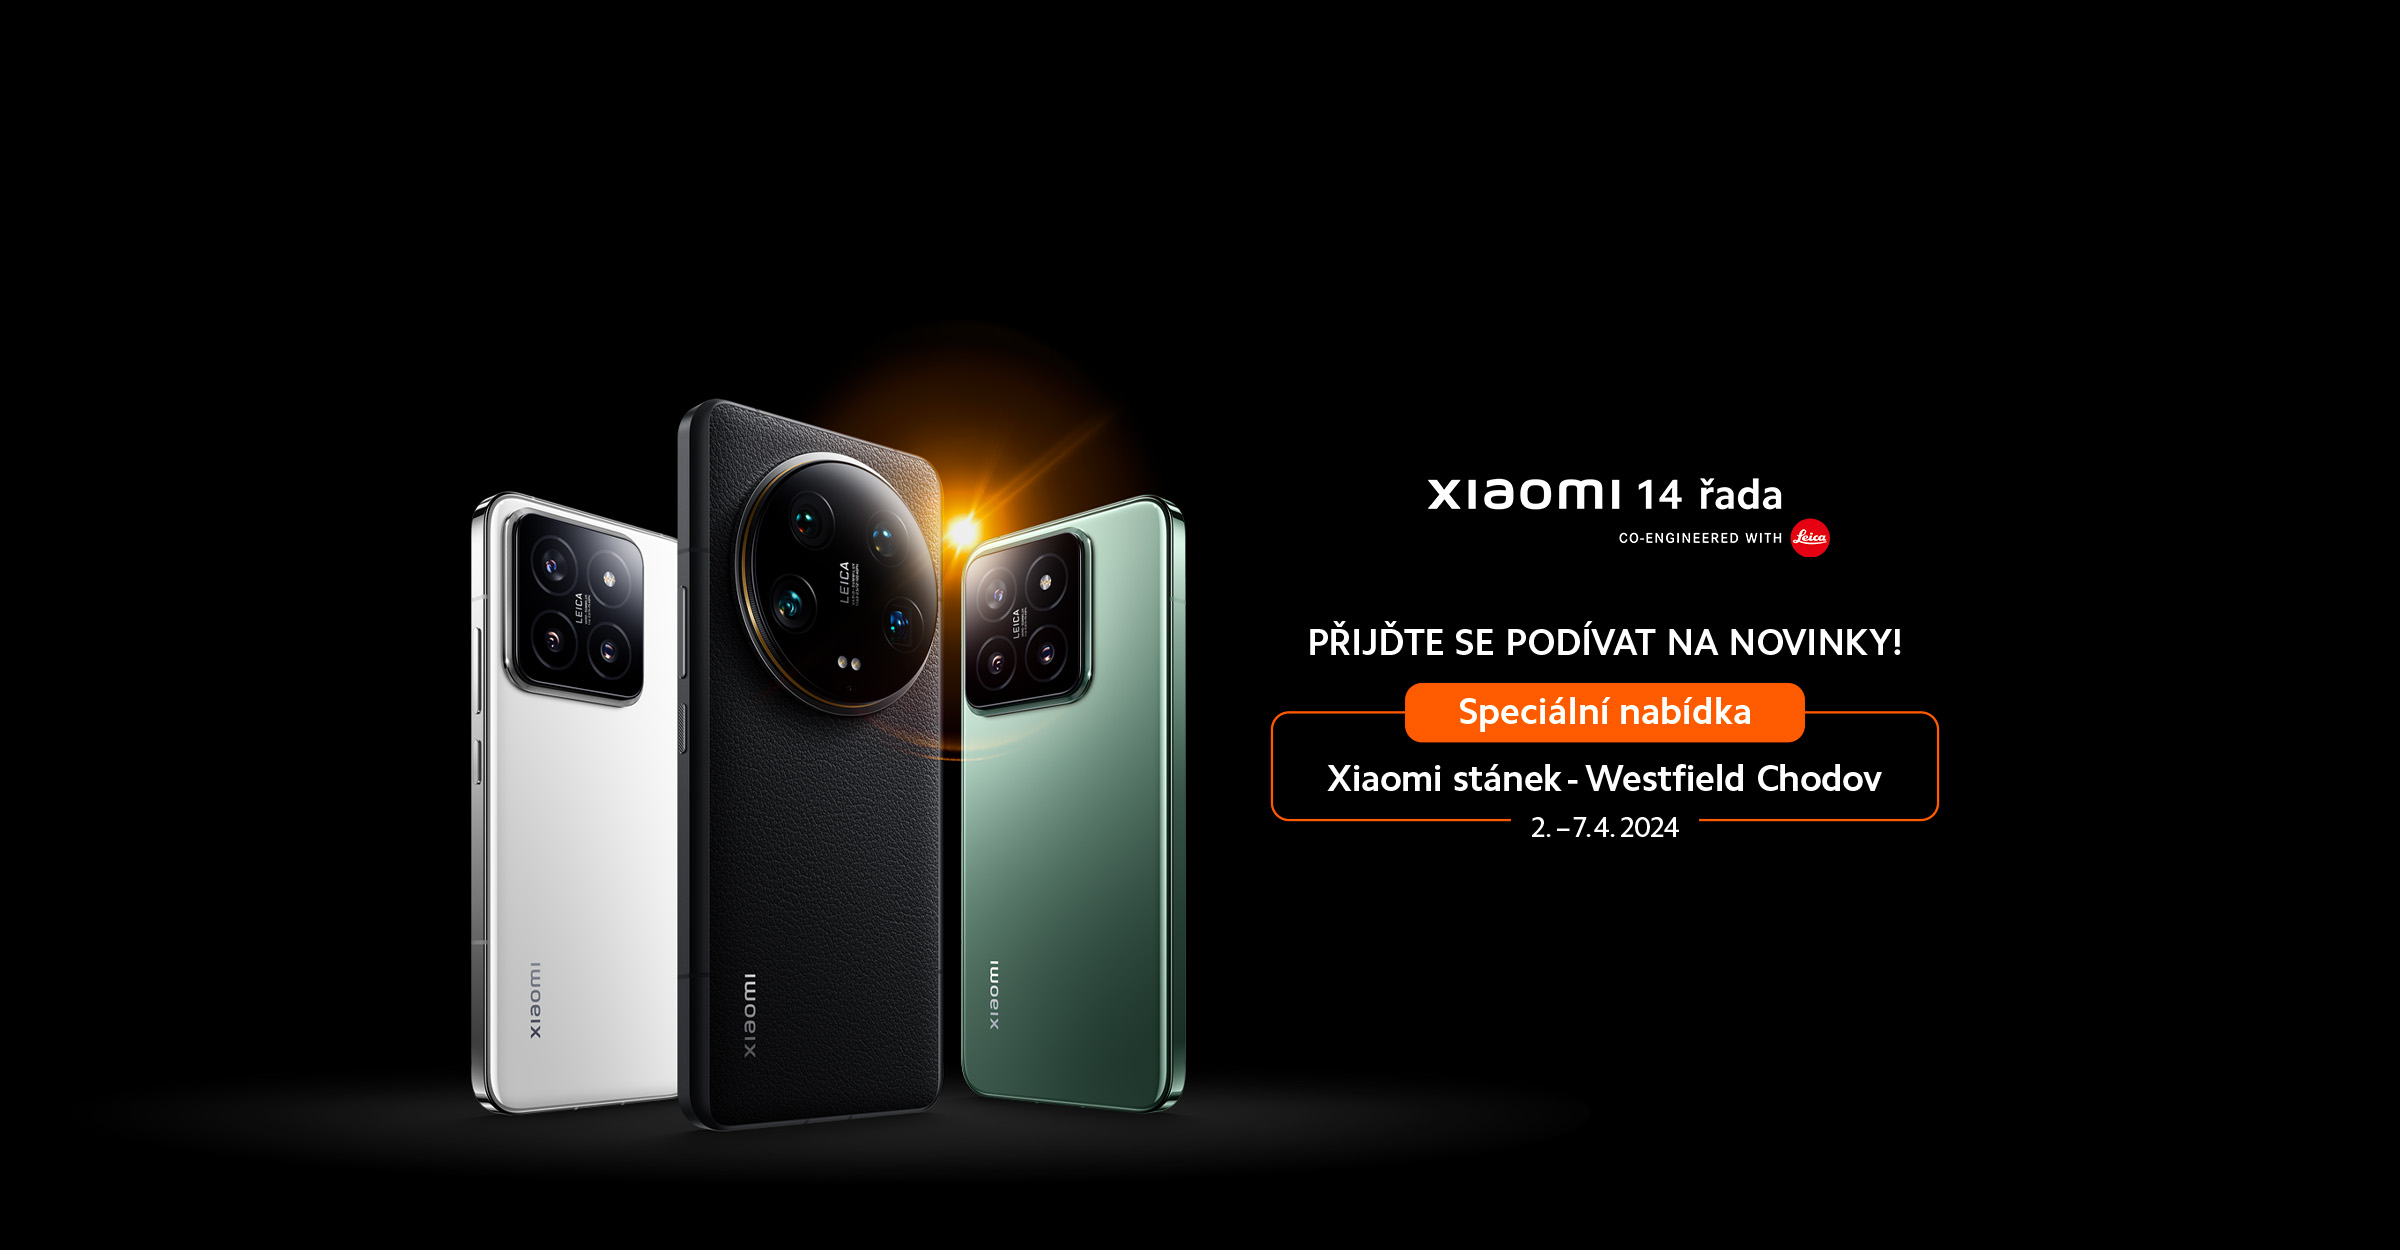 Speciální stánek Xiaomi 14 řada ve Westfiled Chodov